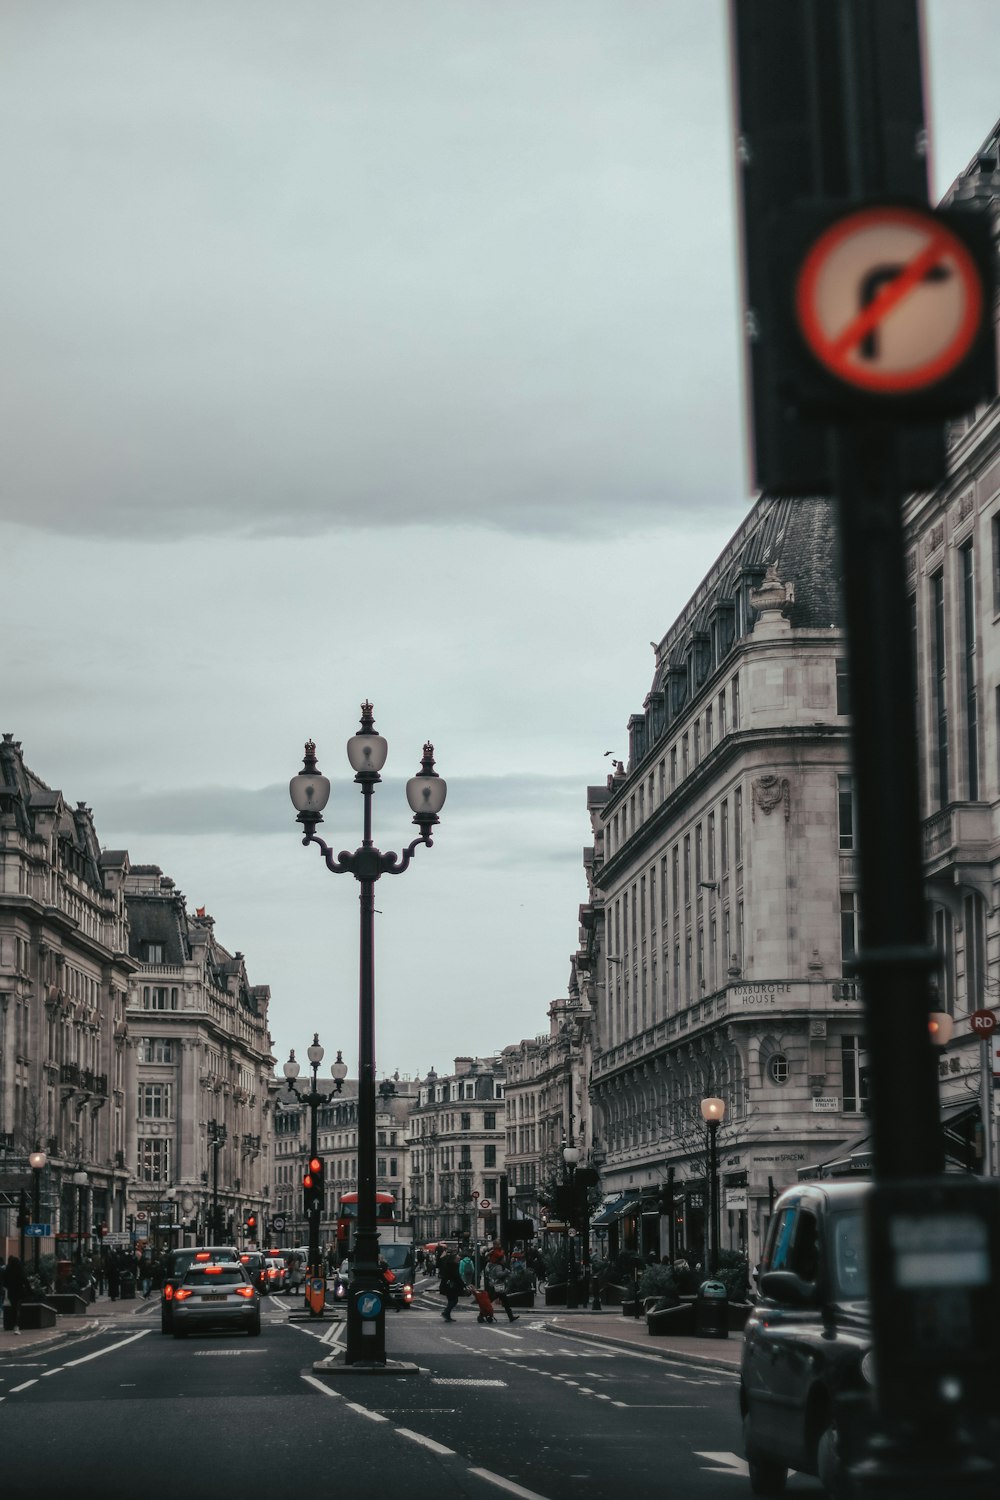 신호등과 건물이 있는 도시 거리 사진 – Unsplash의 무료 런던 이미지